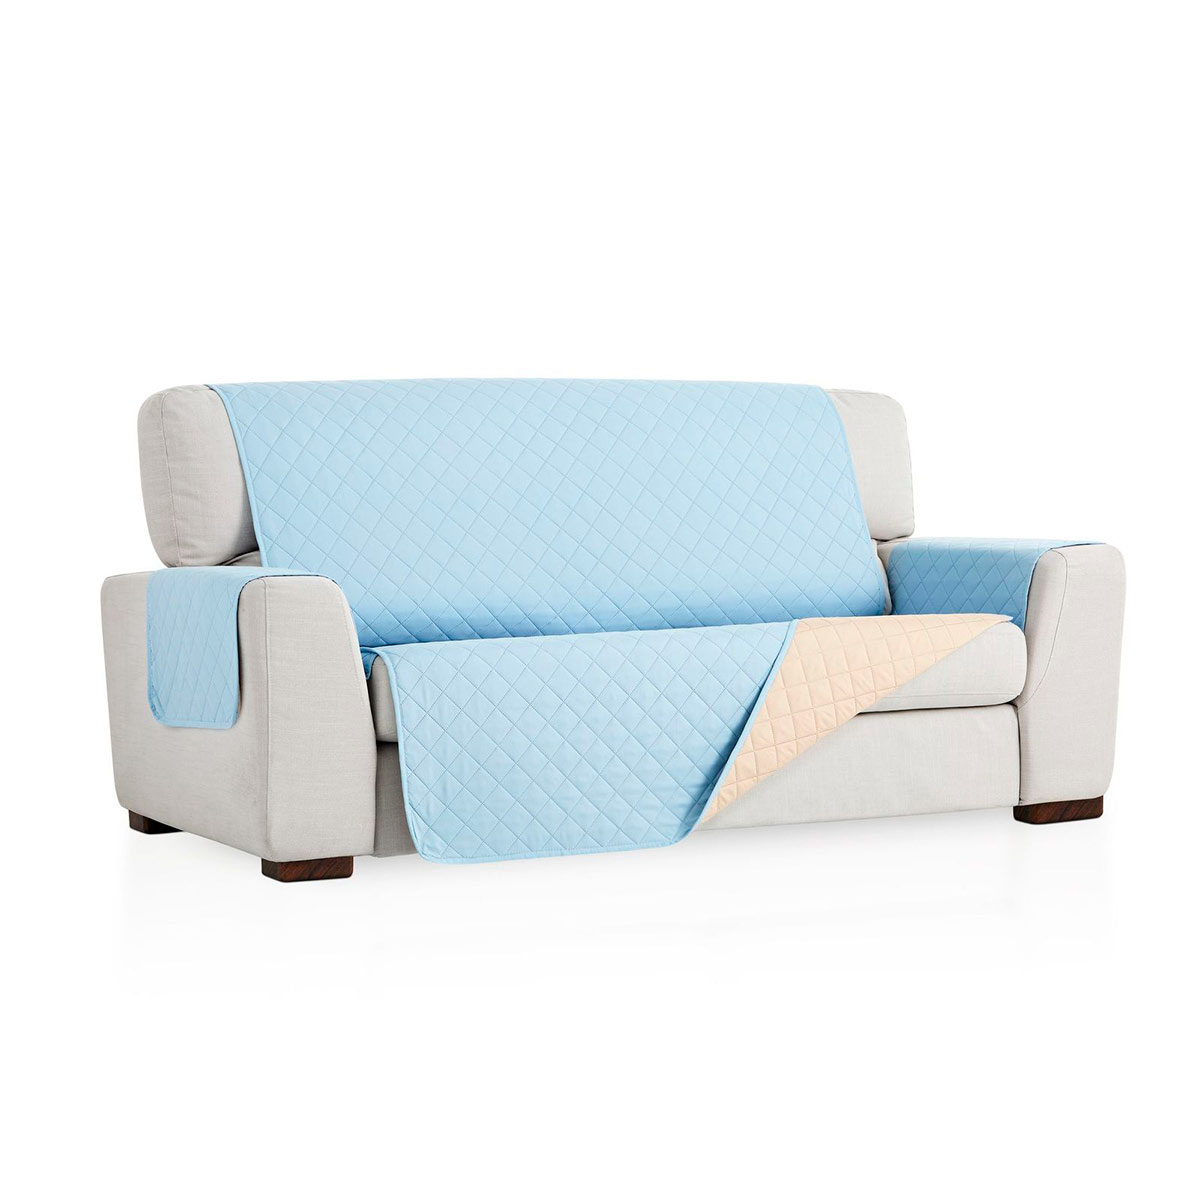 Cubre sofa Azul claro fondo blanco